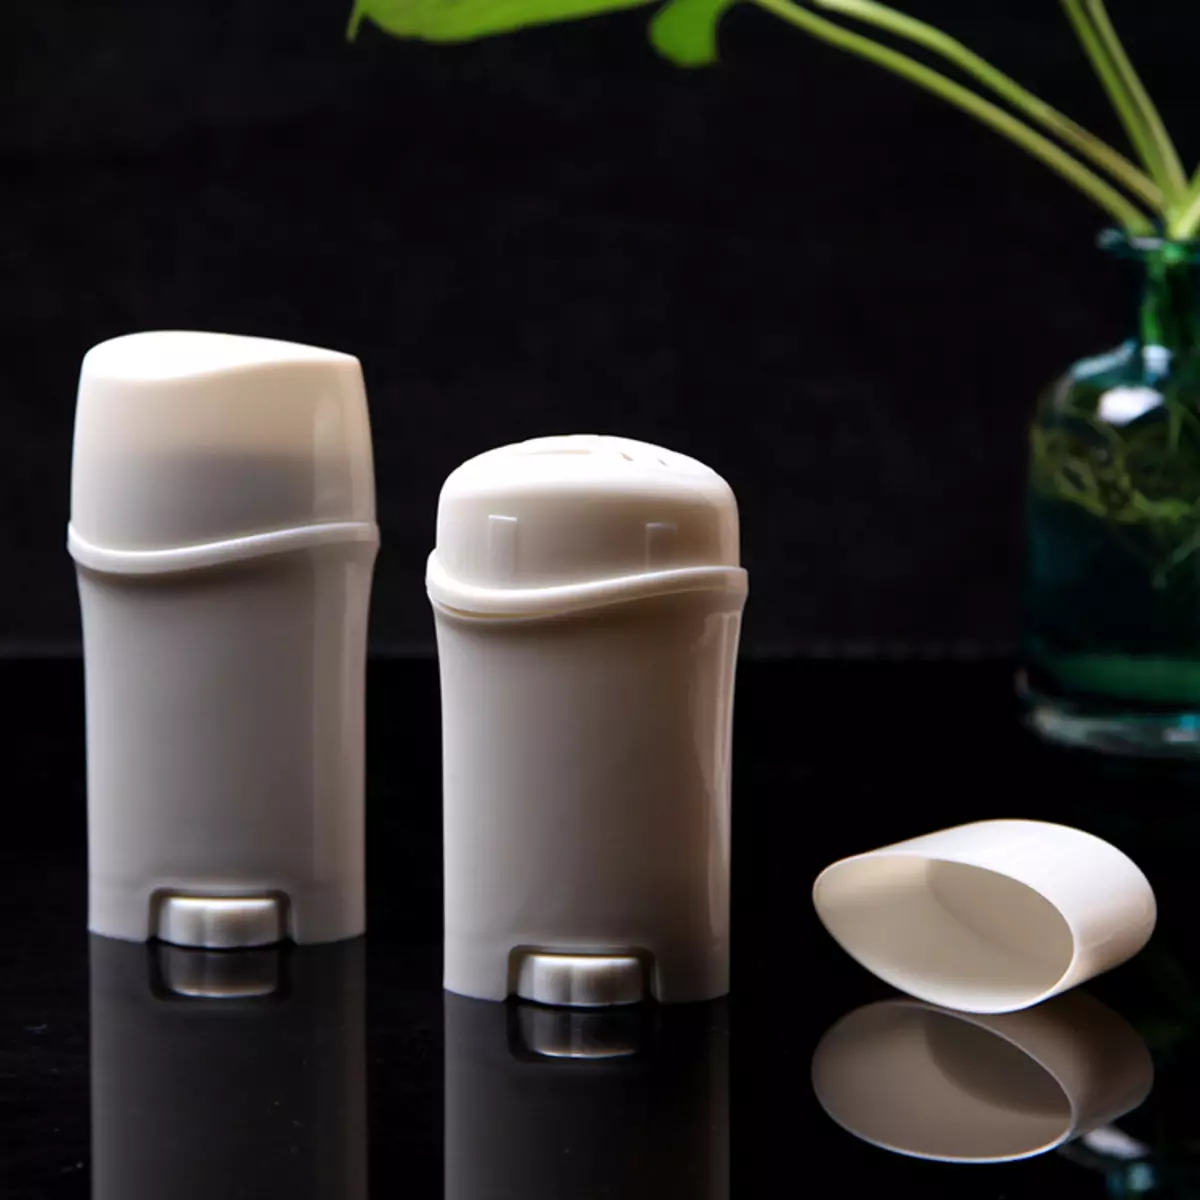 Deodorant me duart tuaja: Receta për gatim për lëngjet natyrore dhe deodorants të ngurta për sqetullat nga djersa me vaj kokosit 4602_10